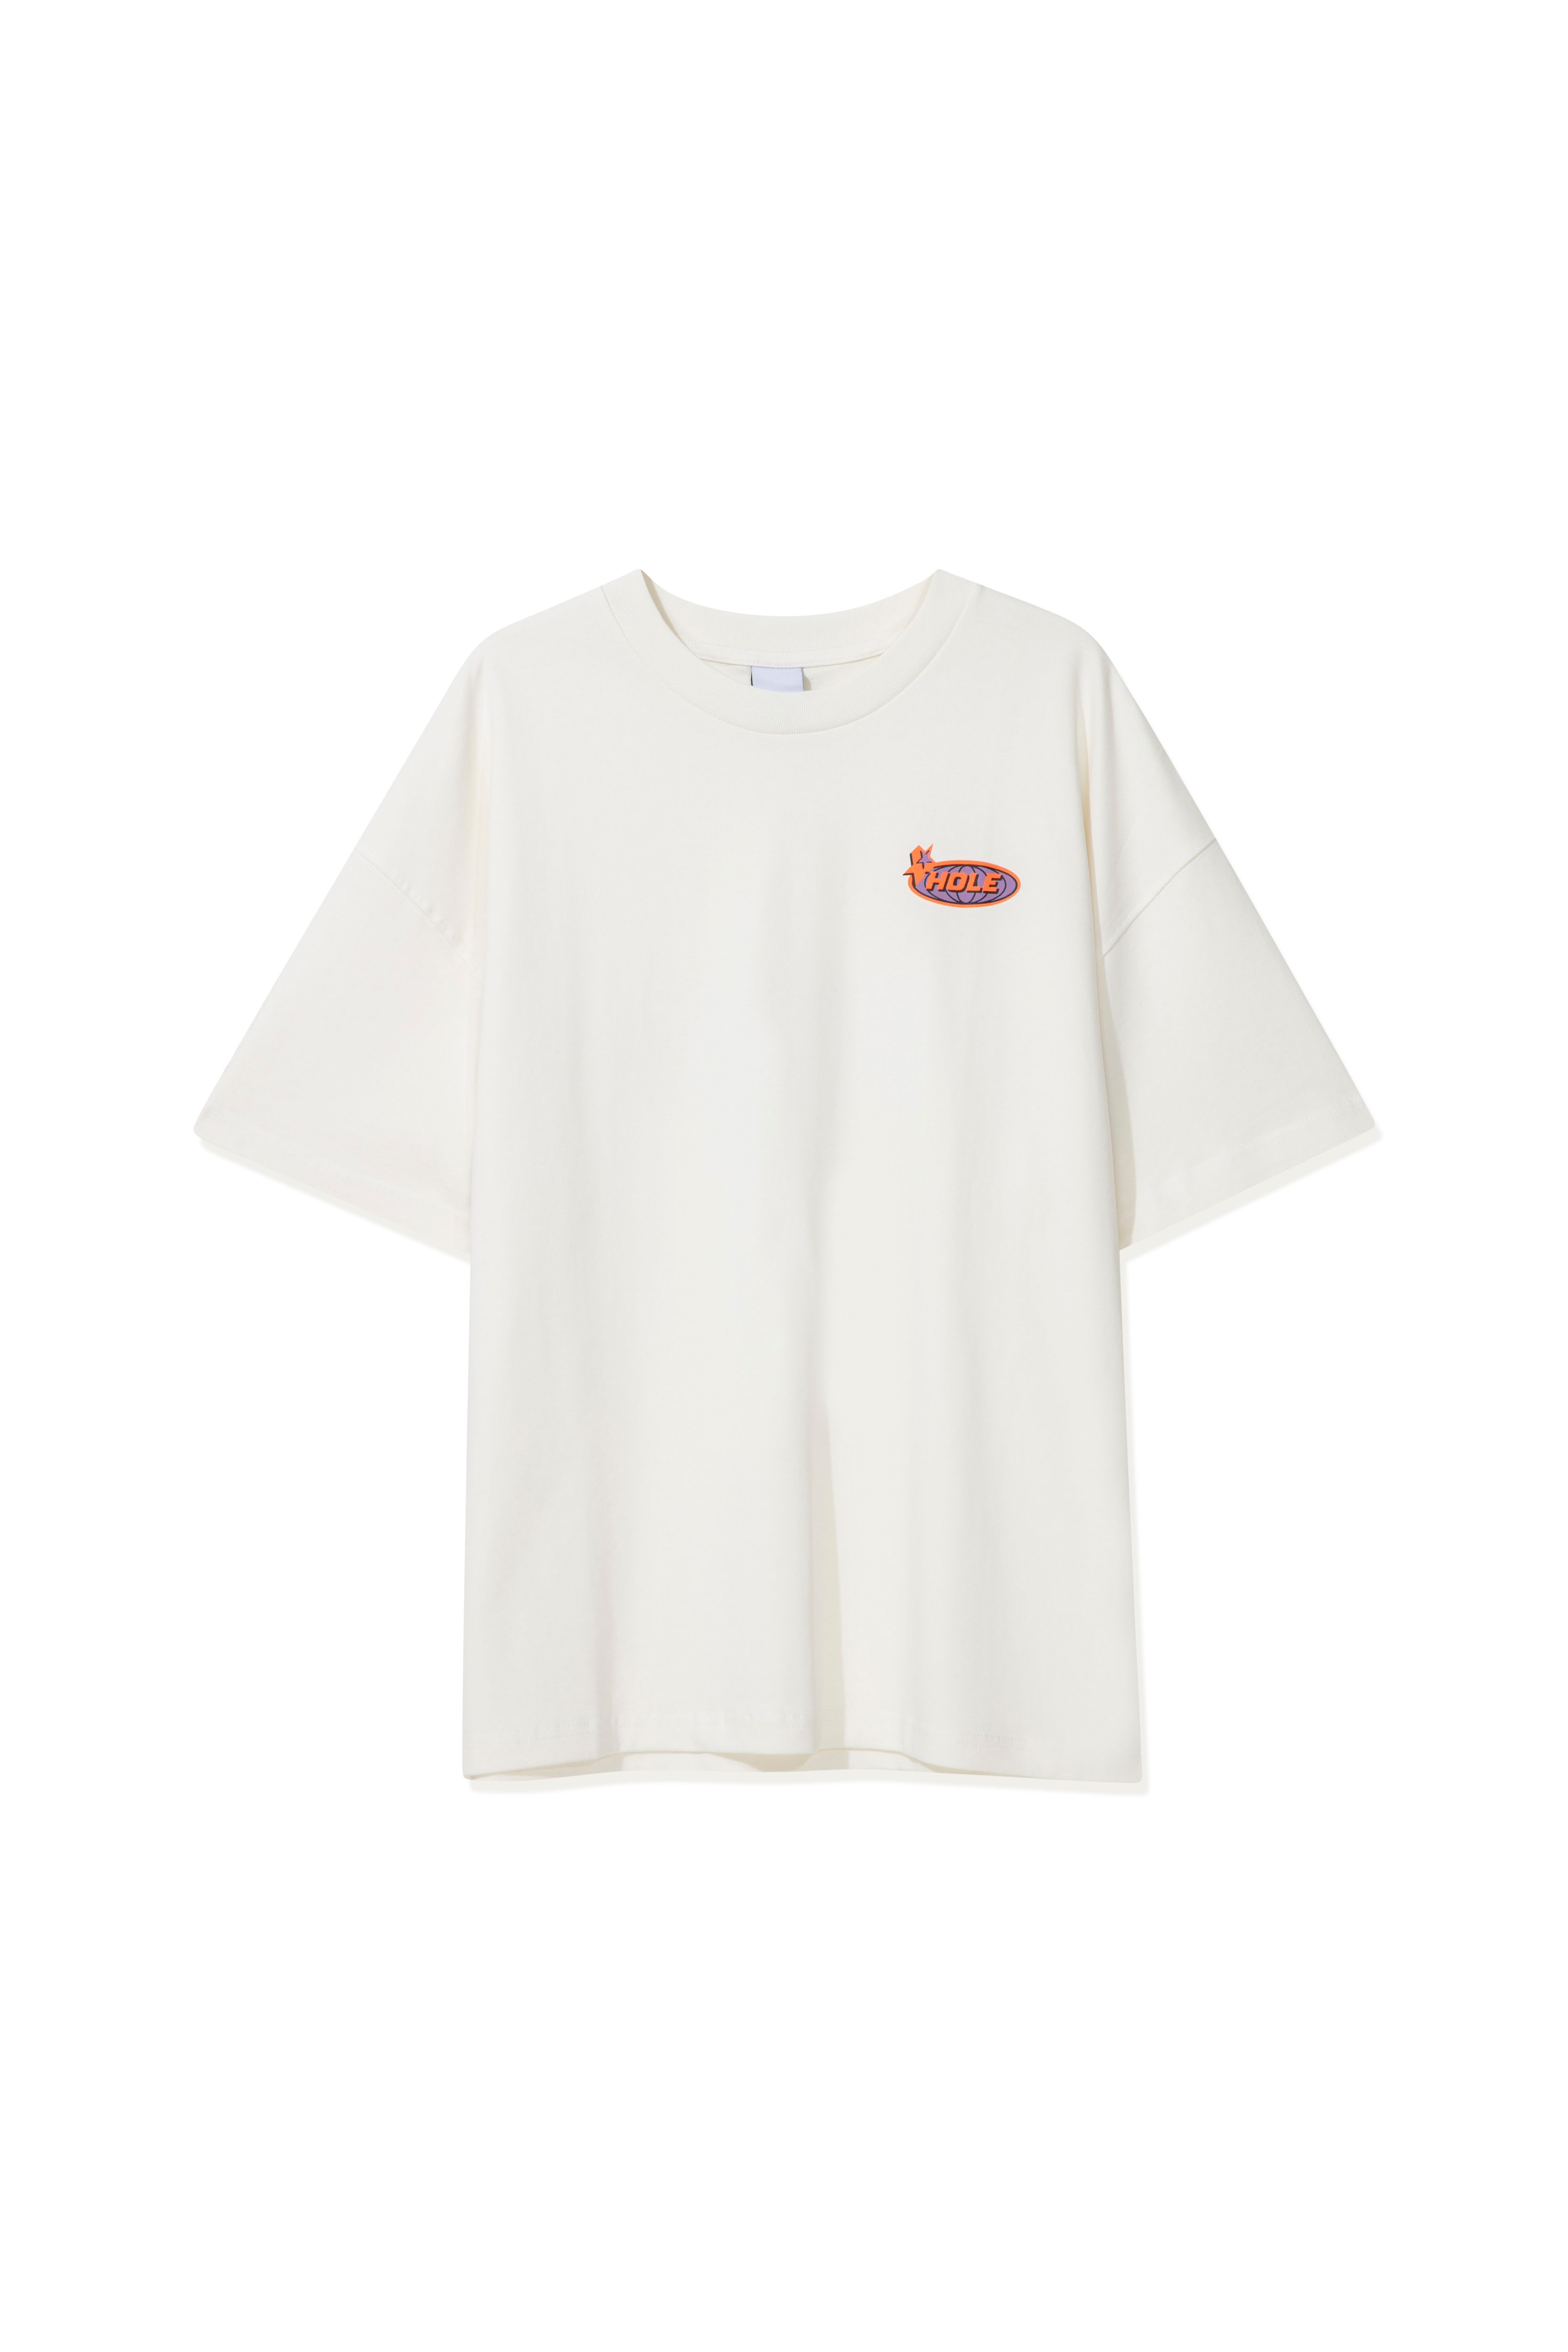 Hole Oversize T-shirt w/ star logo - WHITE